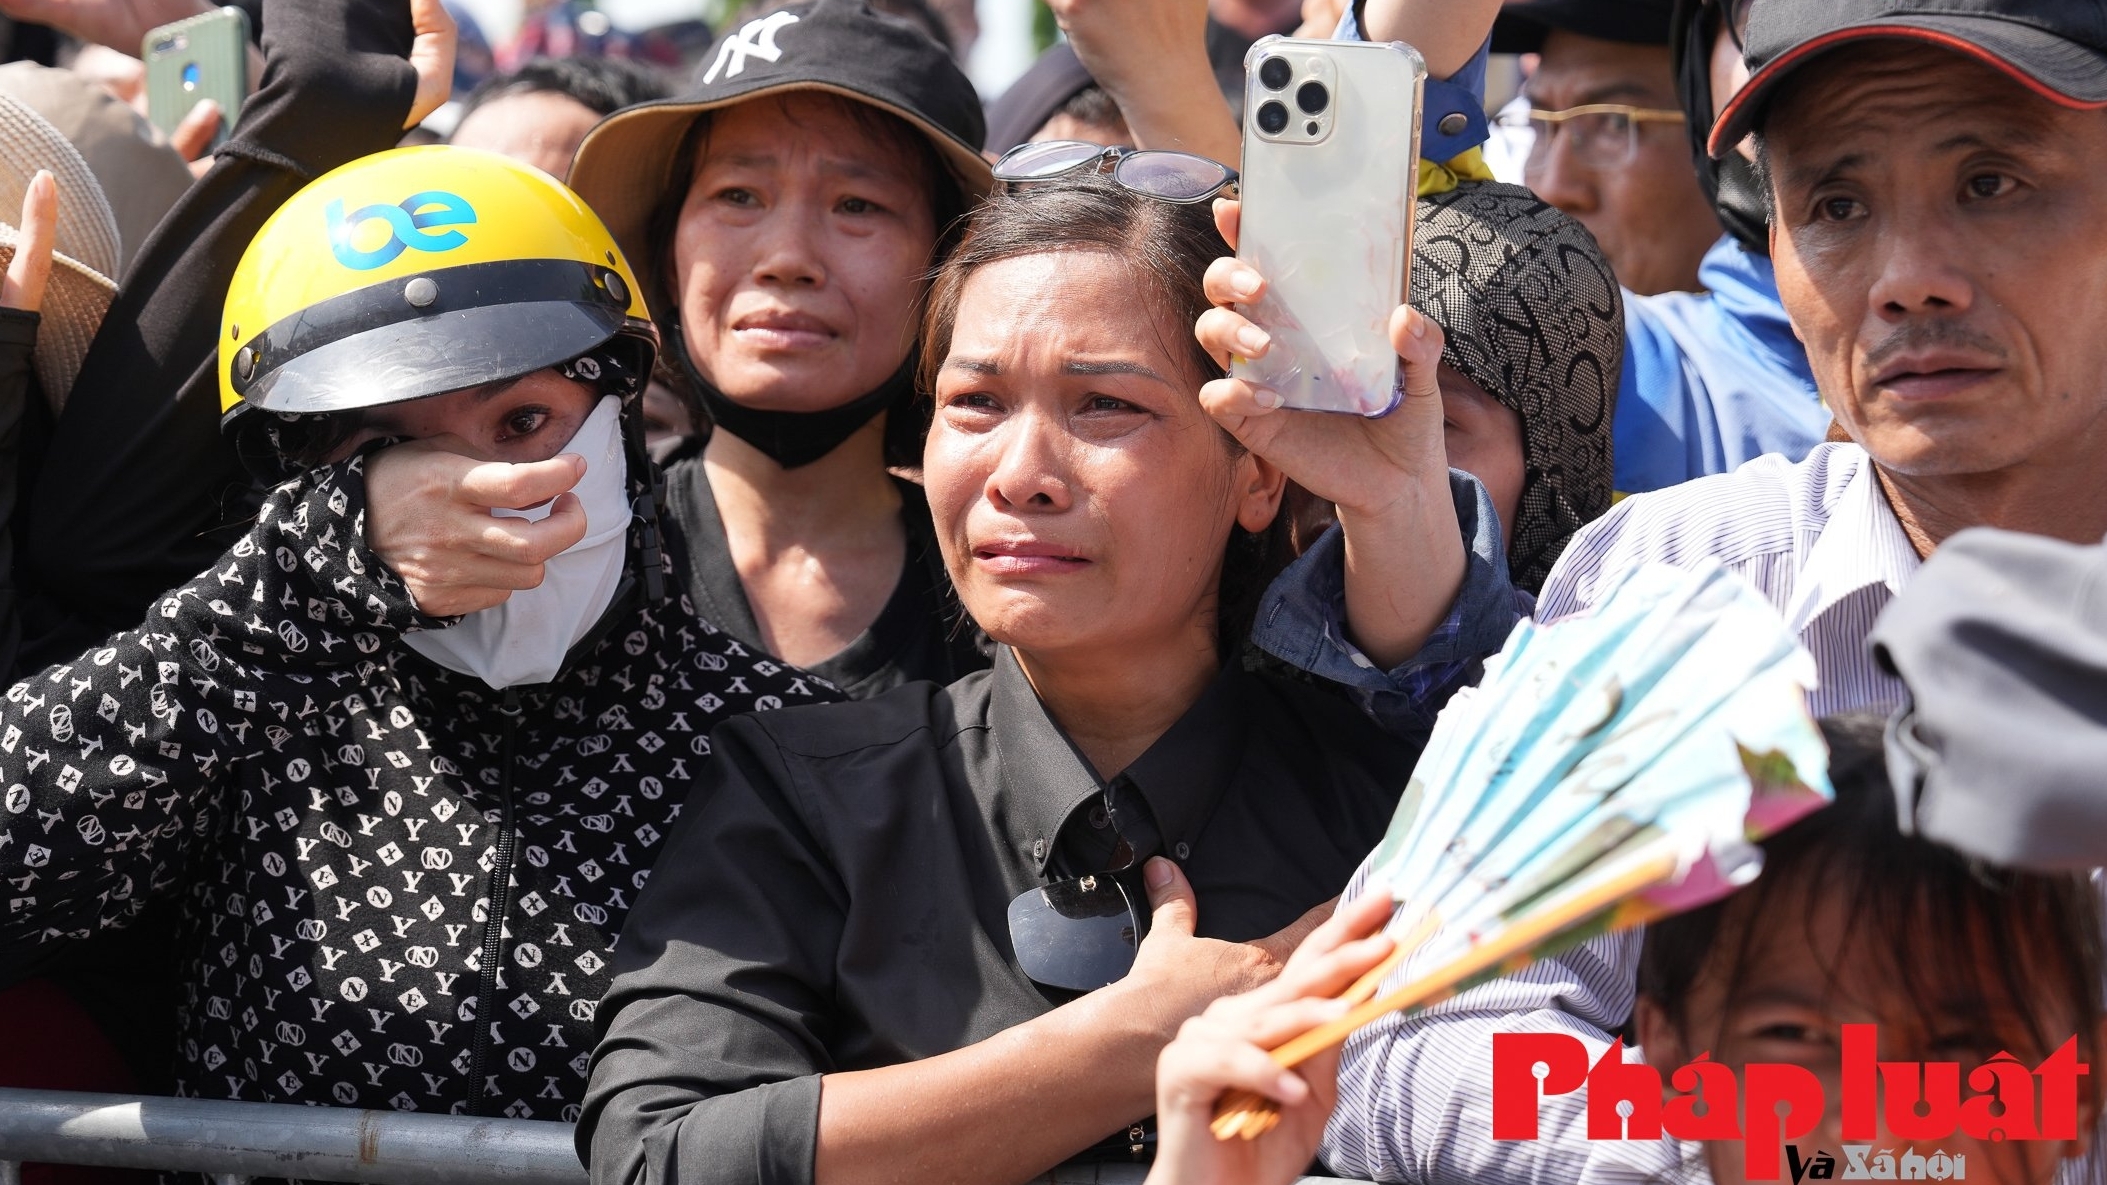 Những giọt nước mắt của Nhân dân tiễn đưa Tổng Bí thư Nguyễn Phú Trọng